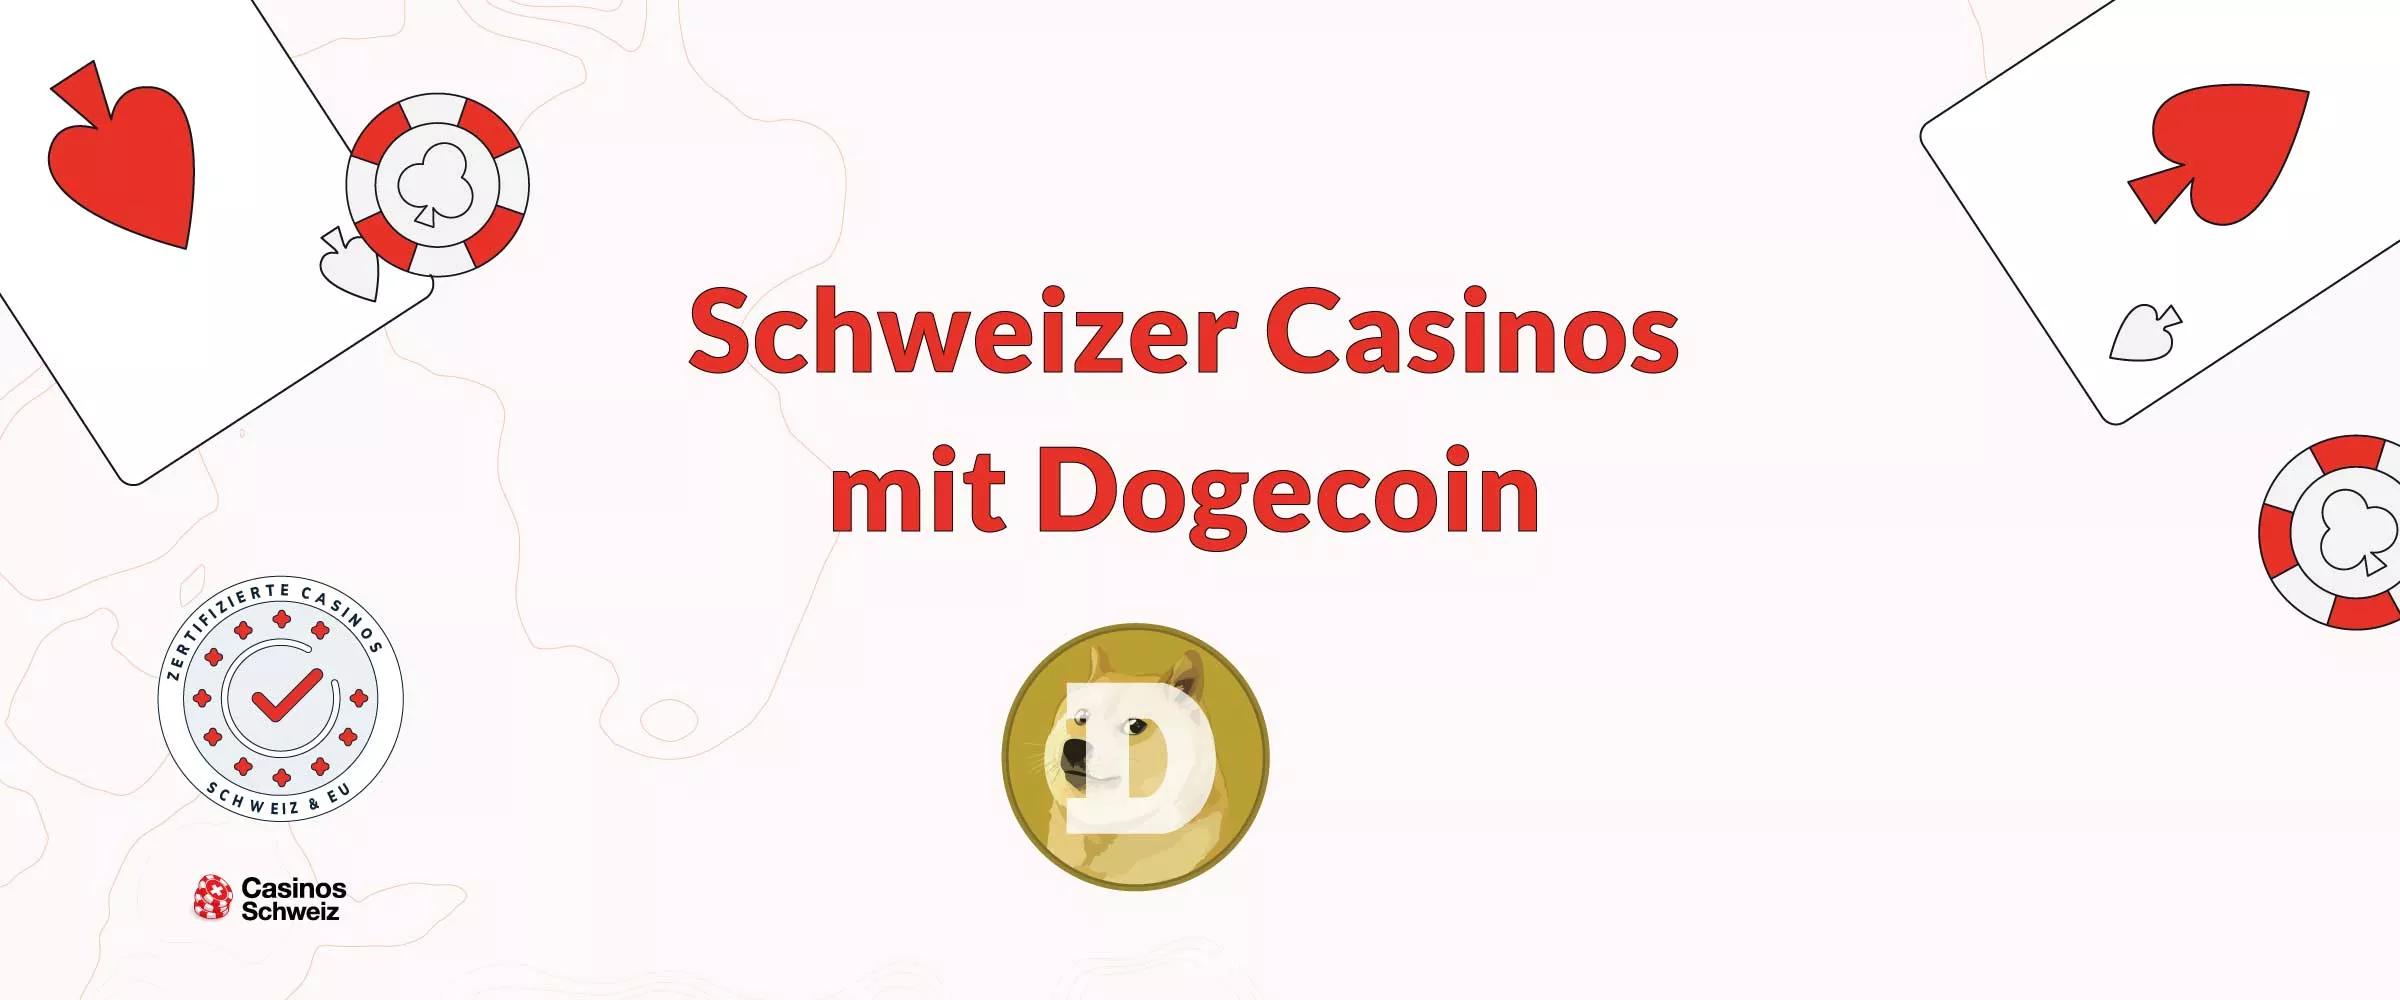 Seriöse Casinos Schweiz mit Dogecoin